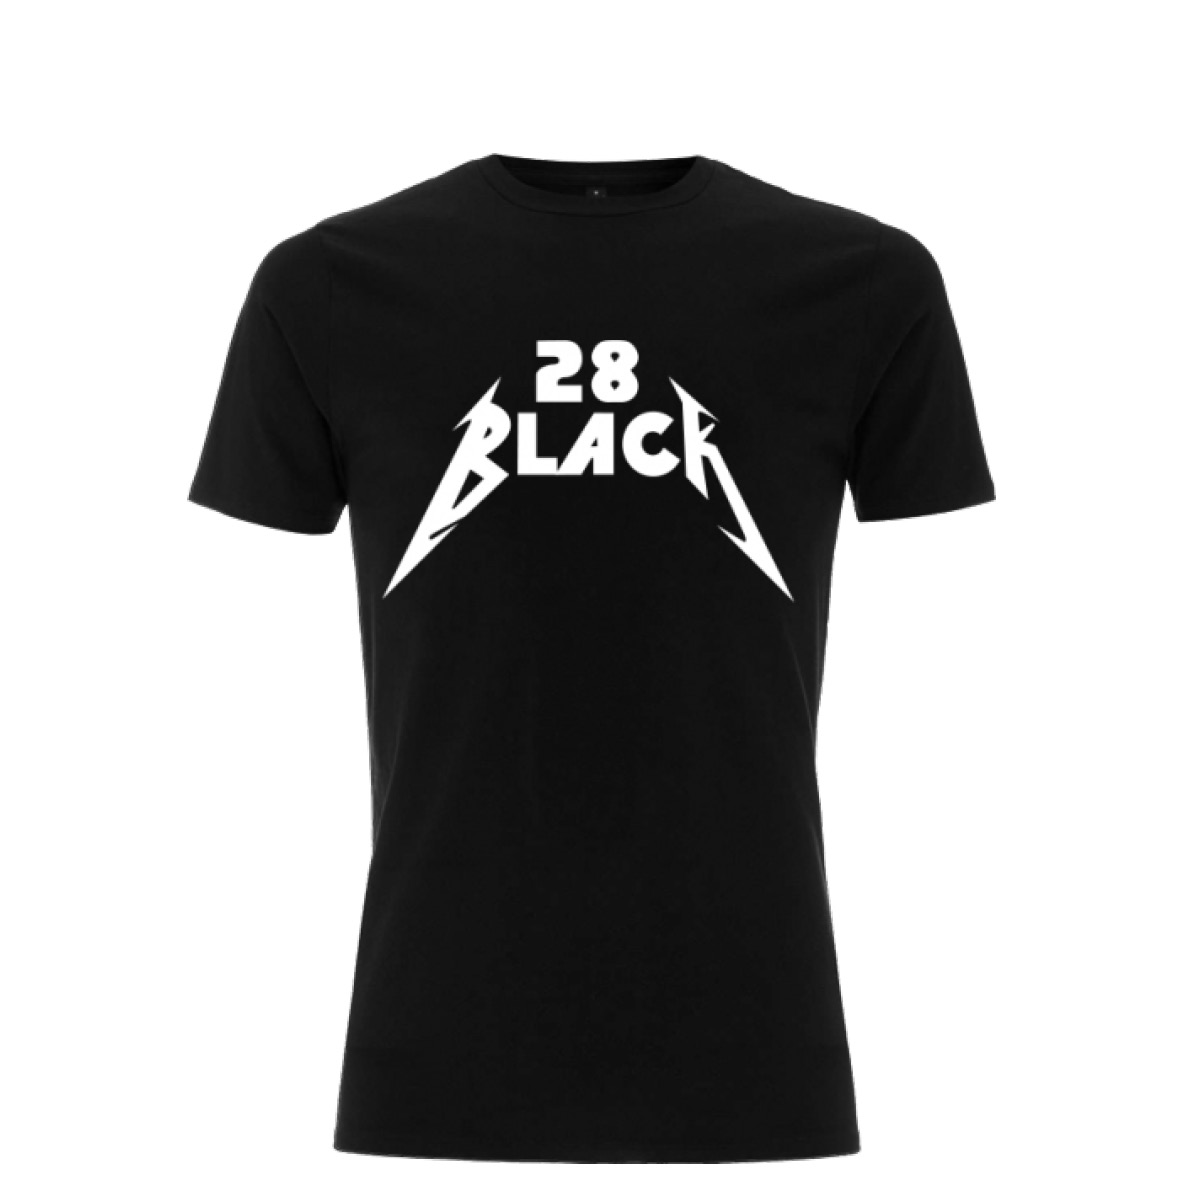 28 BLACK Band-Shirt…für alle Metal Fans